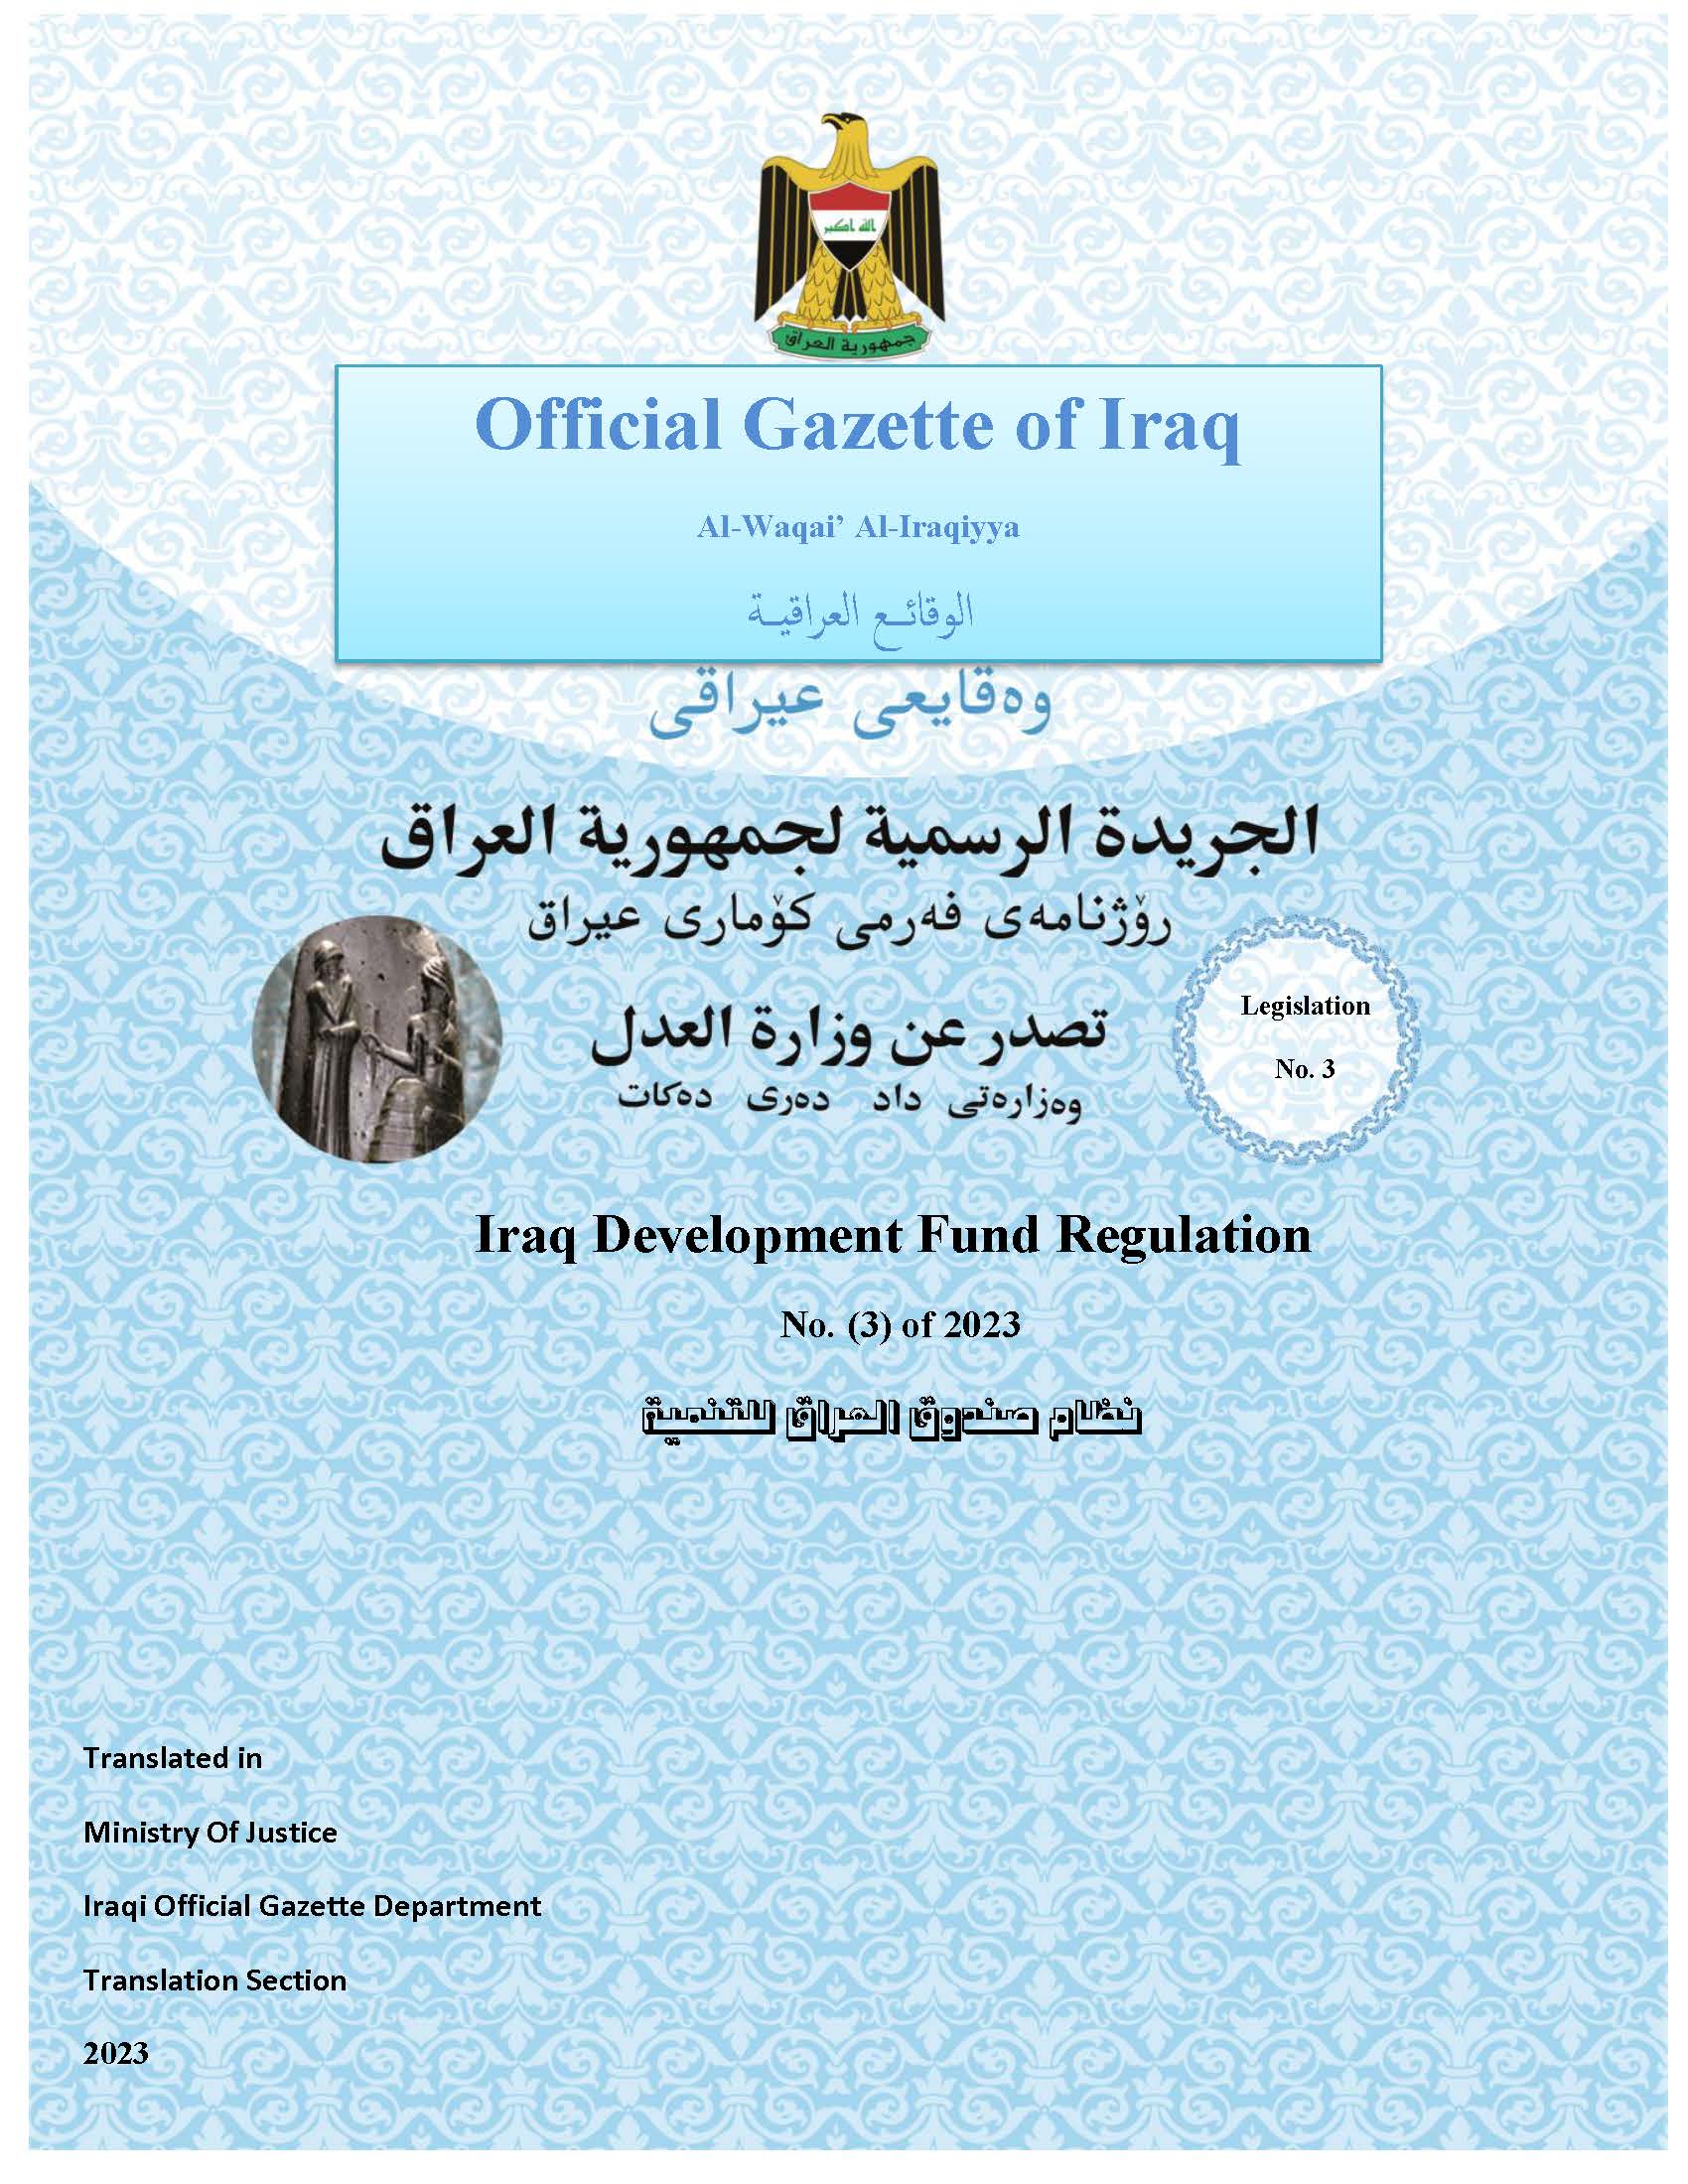 Iraq Development Fund Regulation No.(3) of 2023